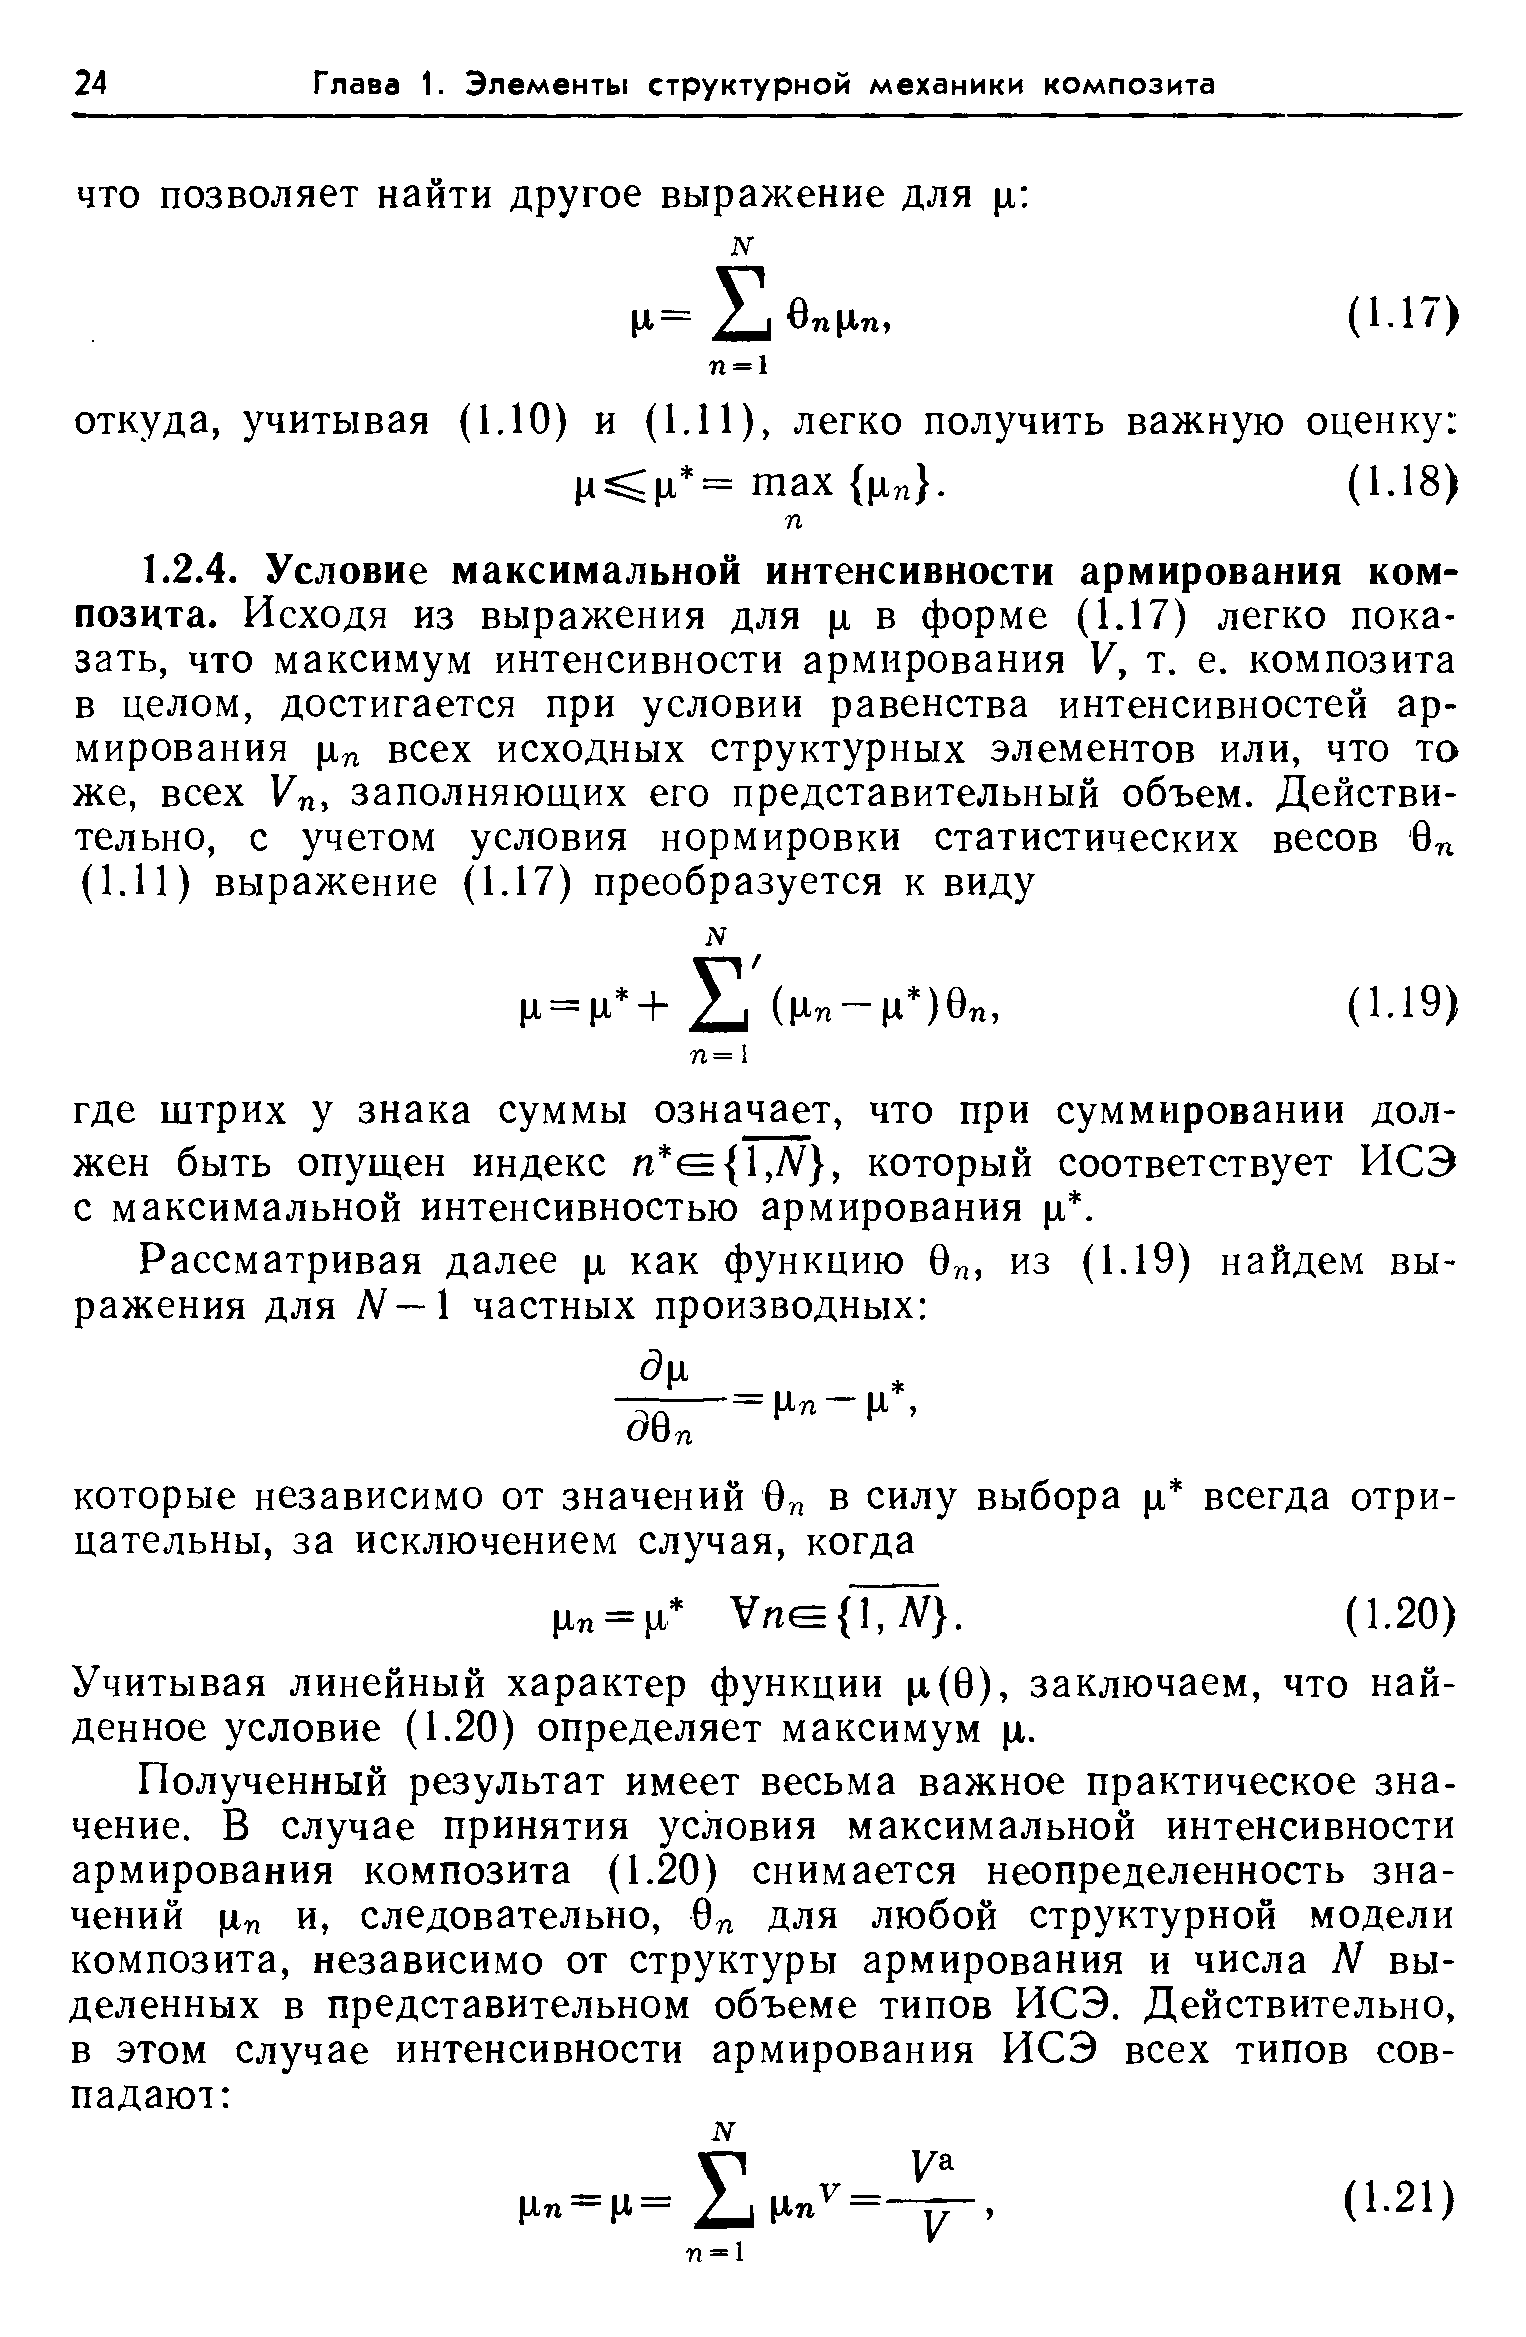 Учитывая линейный характер функции р(0), заключаем, что найденное условие (1.20) определяет максимум р.
